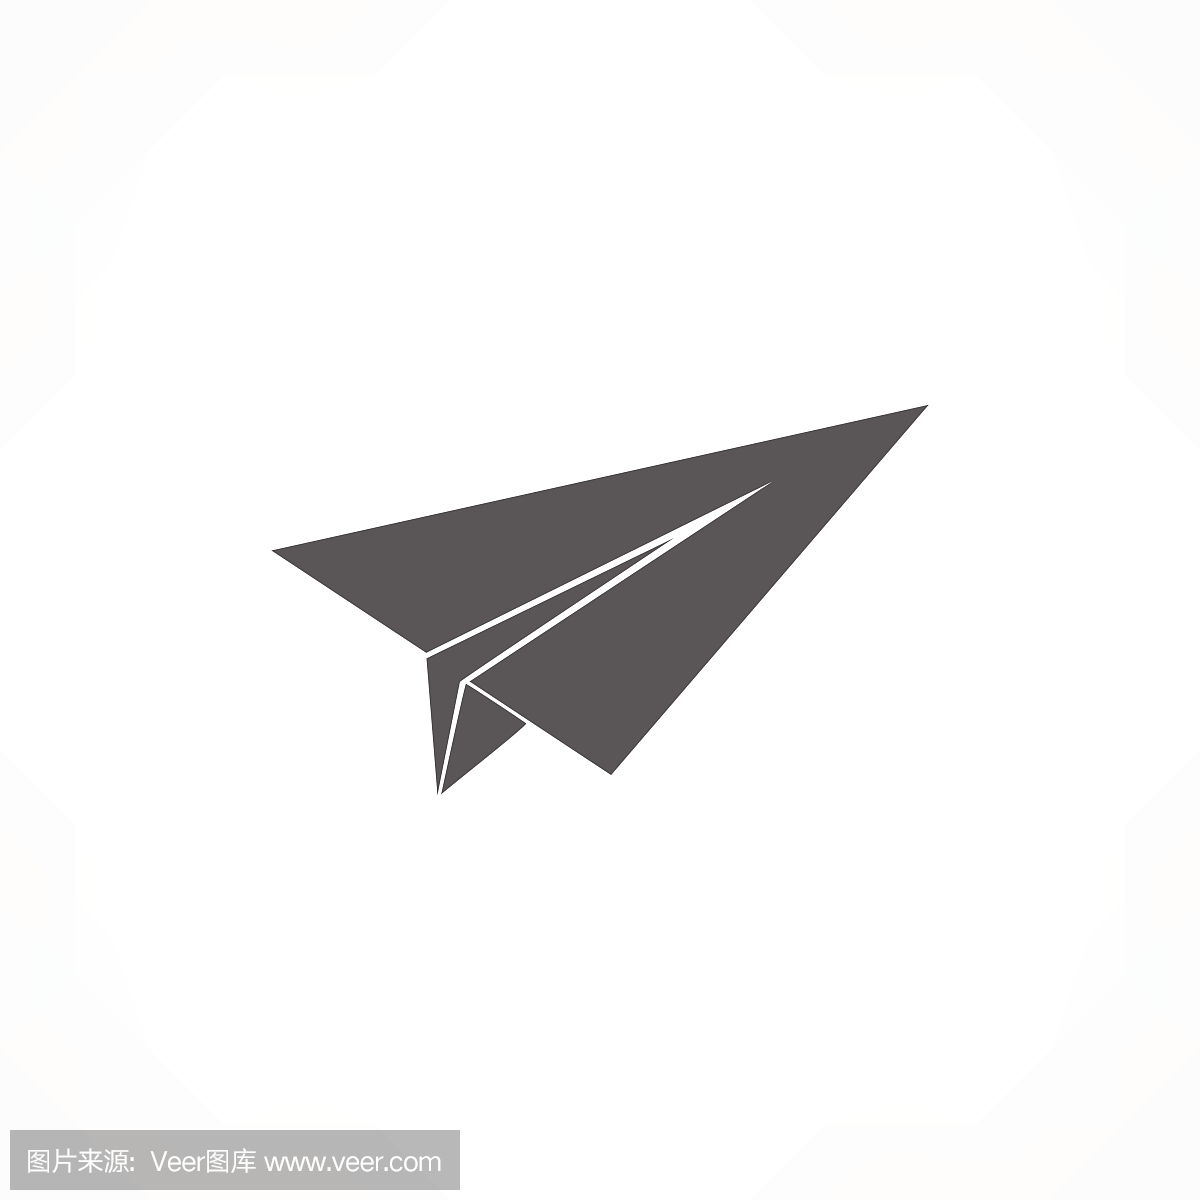 折纸飞机是什么软件下载